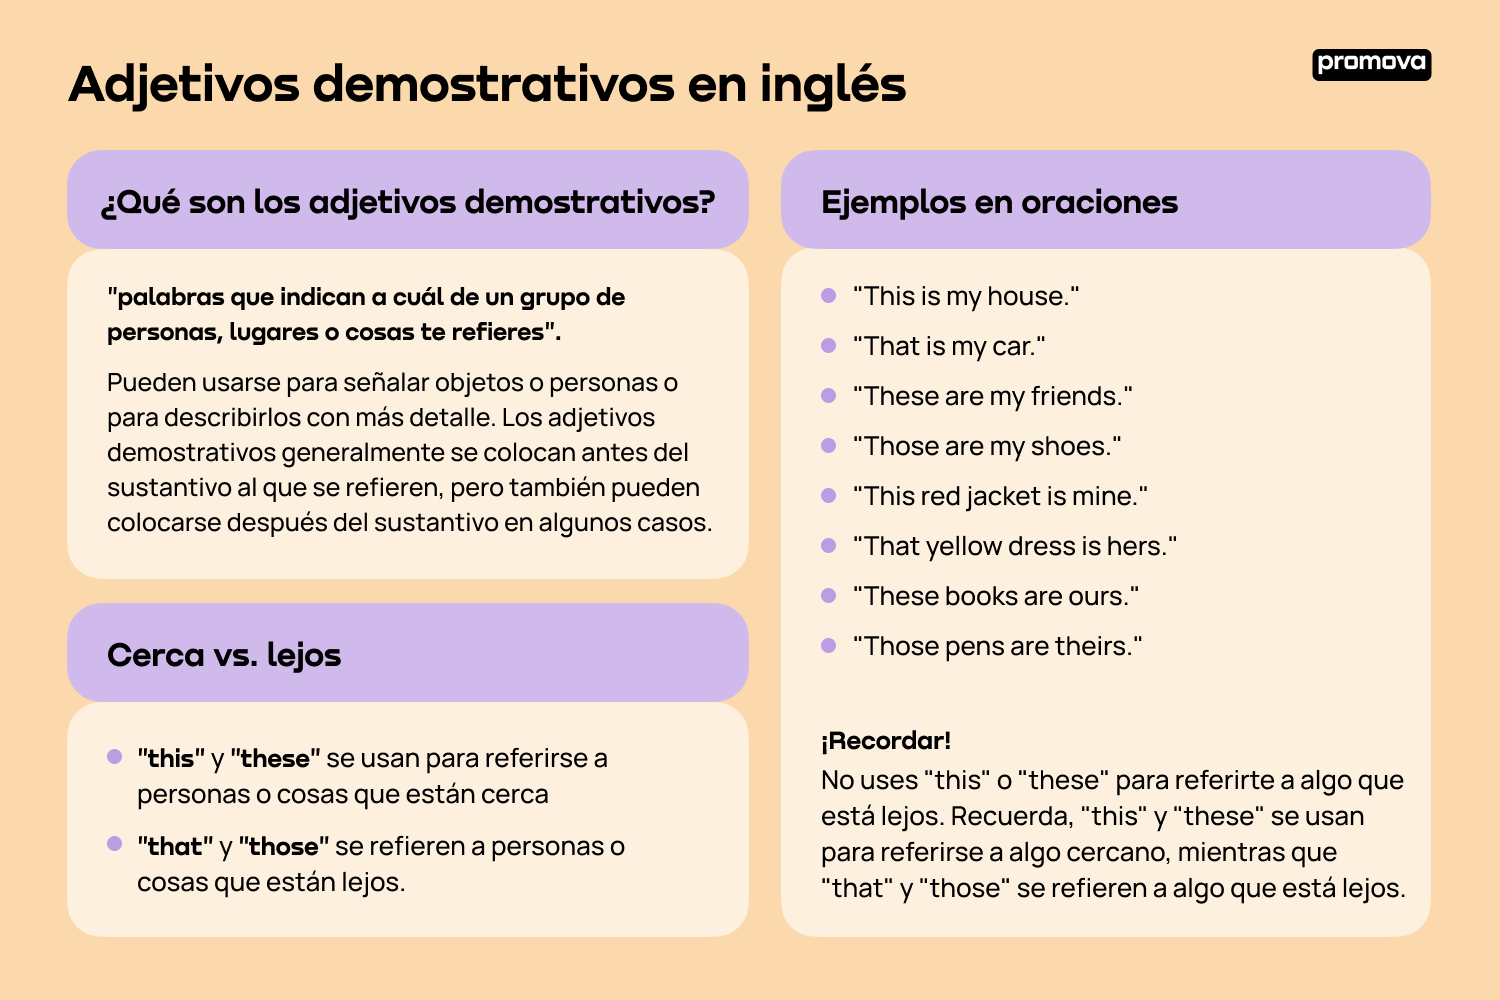 Domina la función y uso de los adjetivos demostrativos en inglés